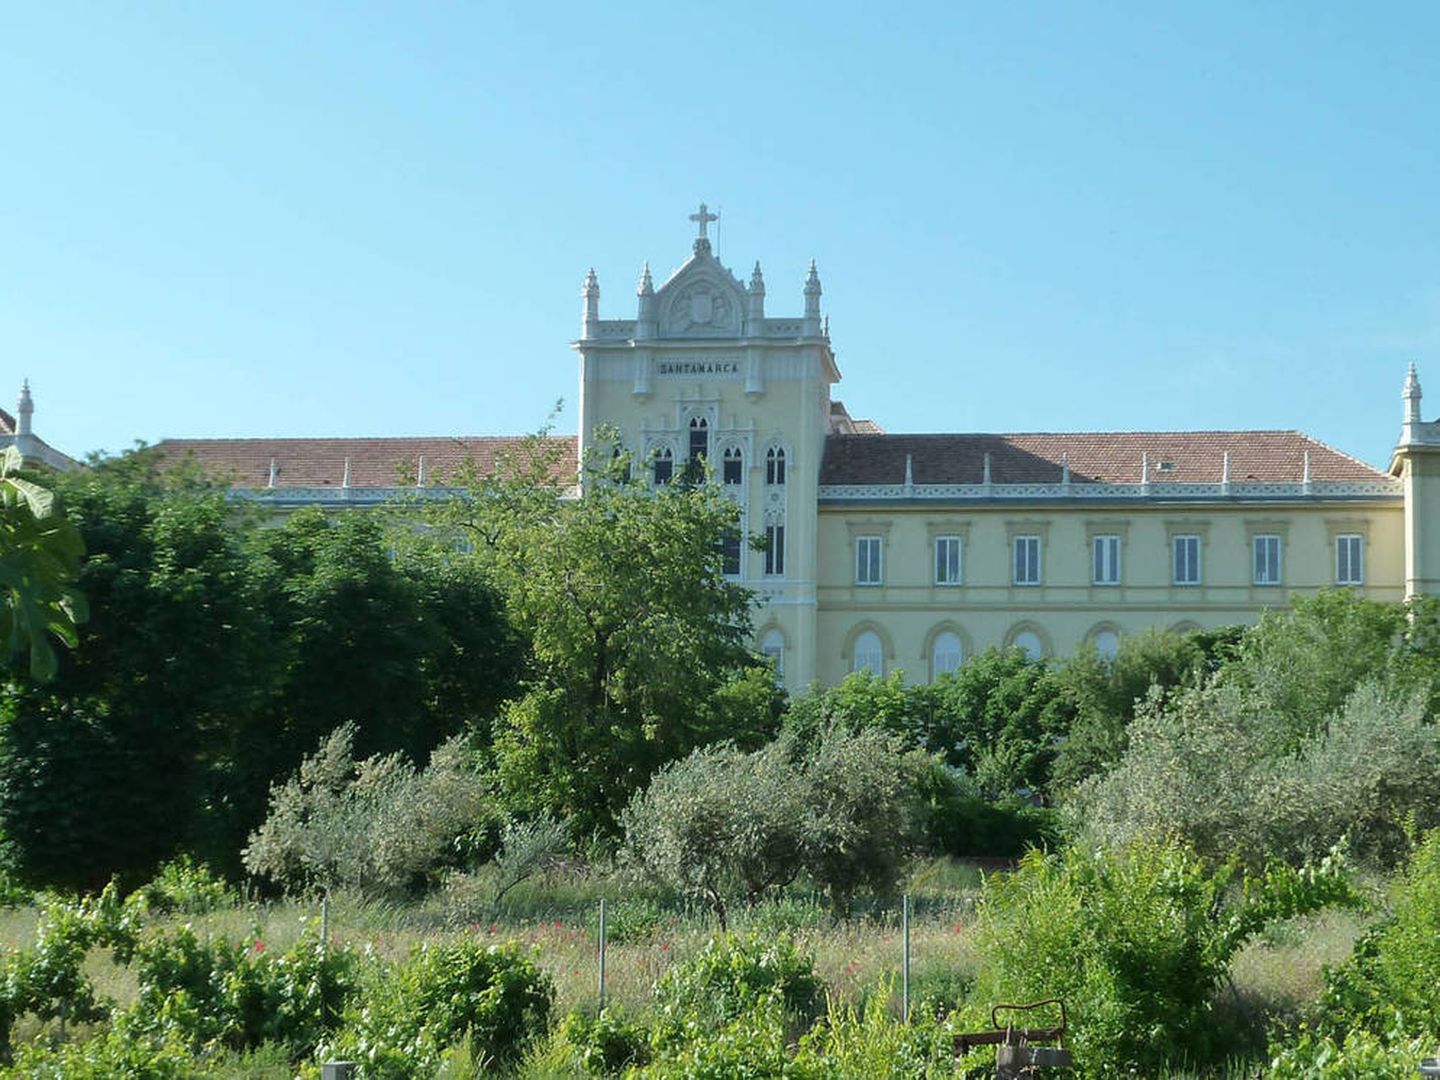 Colegio Santamarca. (Wikipedia)